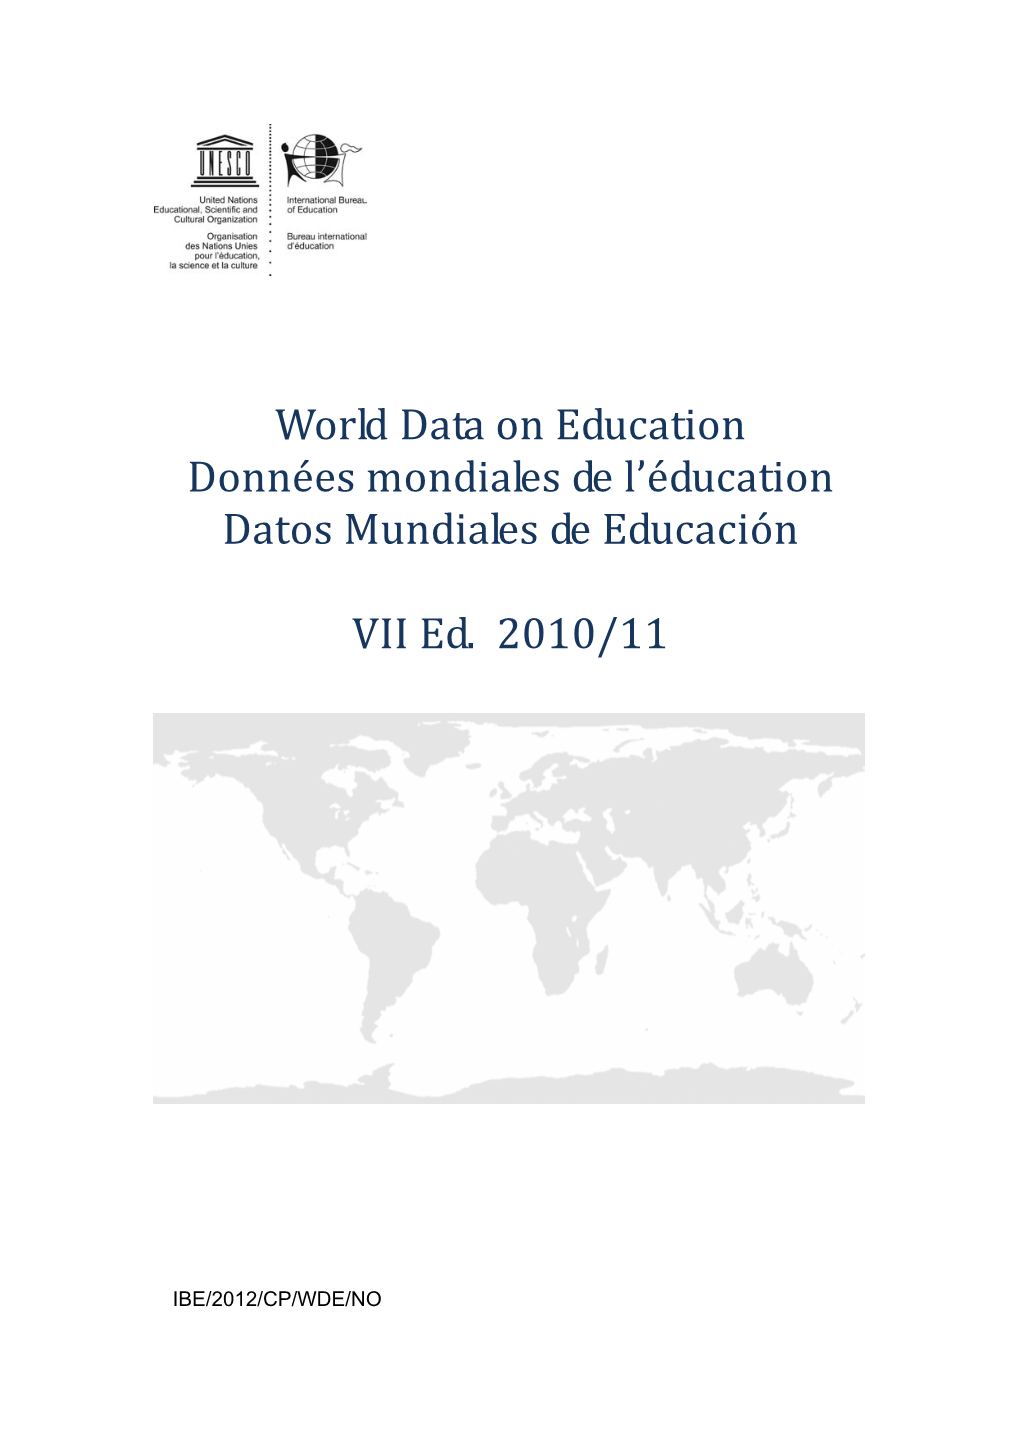 Norway; World Data on Education, 2010/11; 2012